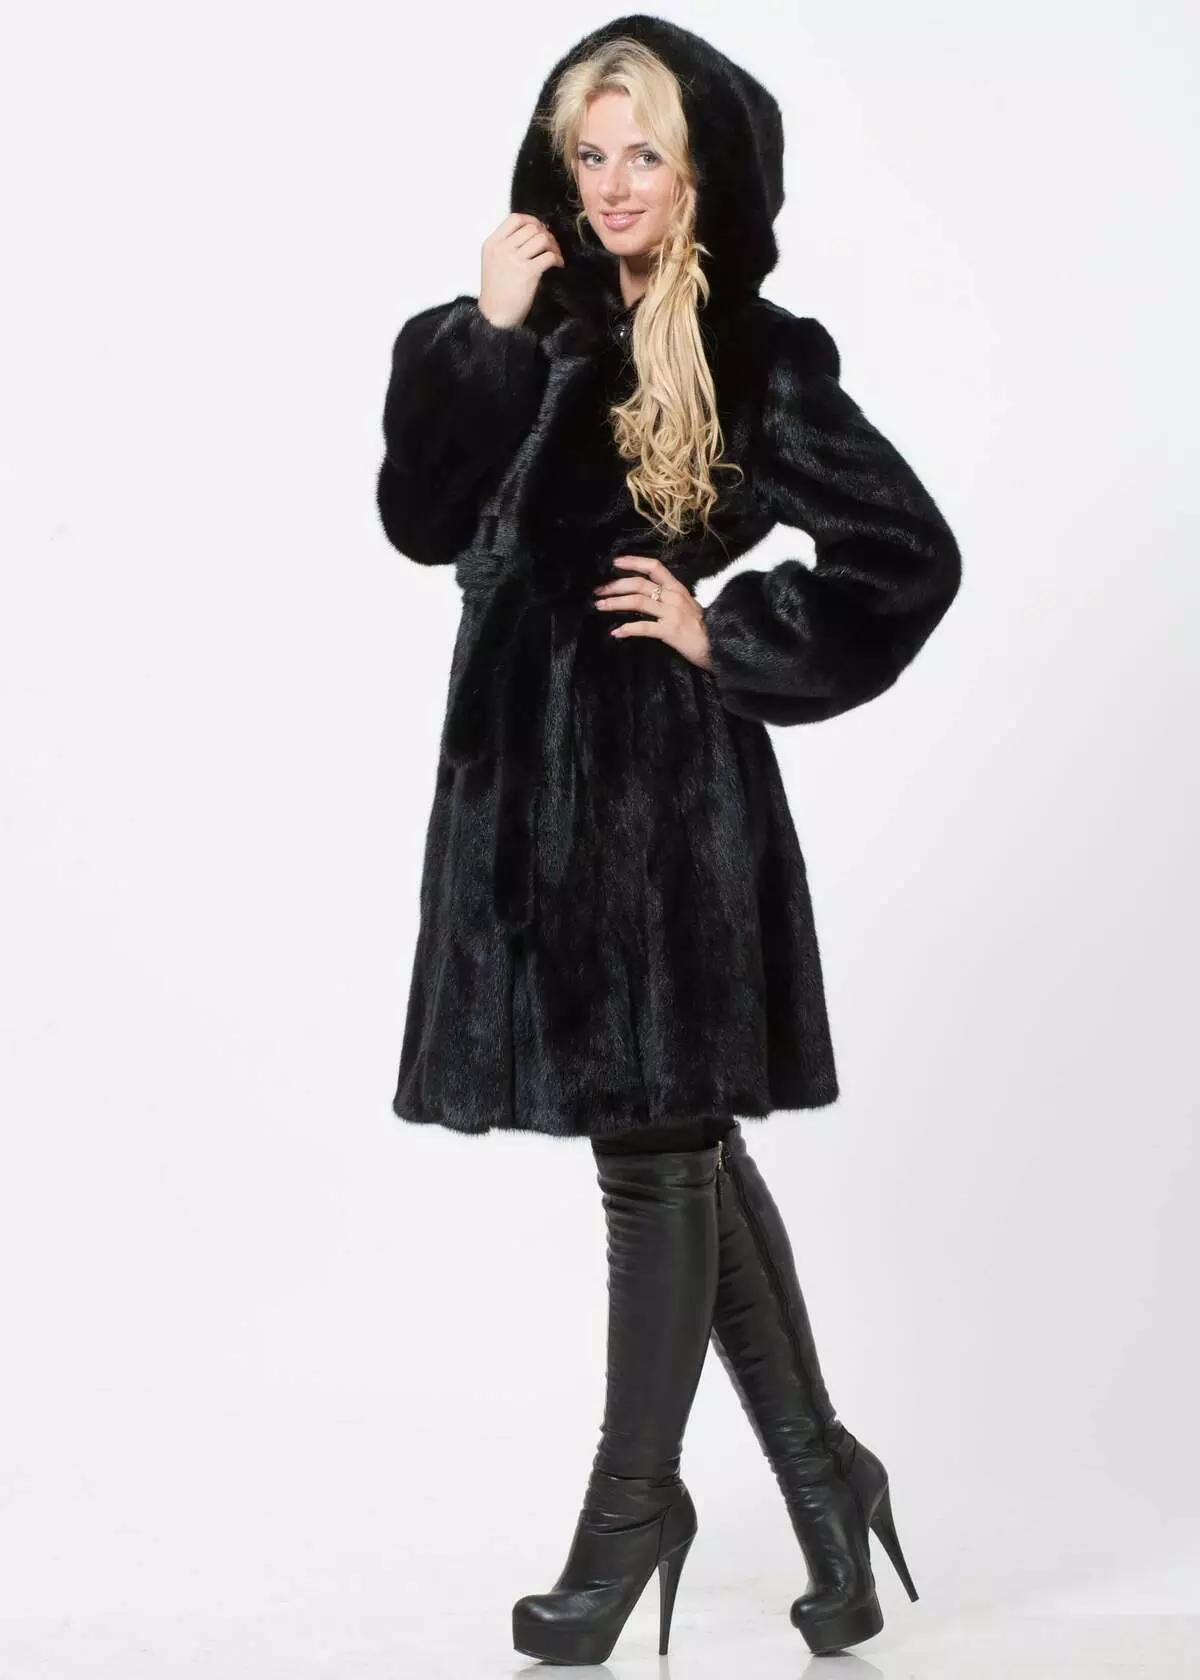 Black Fur Coat (63 sary): Colors Diamond, Long, mainty ary volo, vehivavy volom-borona avy amin'ny volom-borona mainty misy satroka, misy kiraro mena 691_21